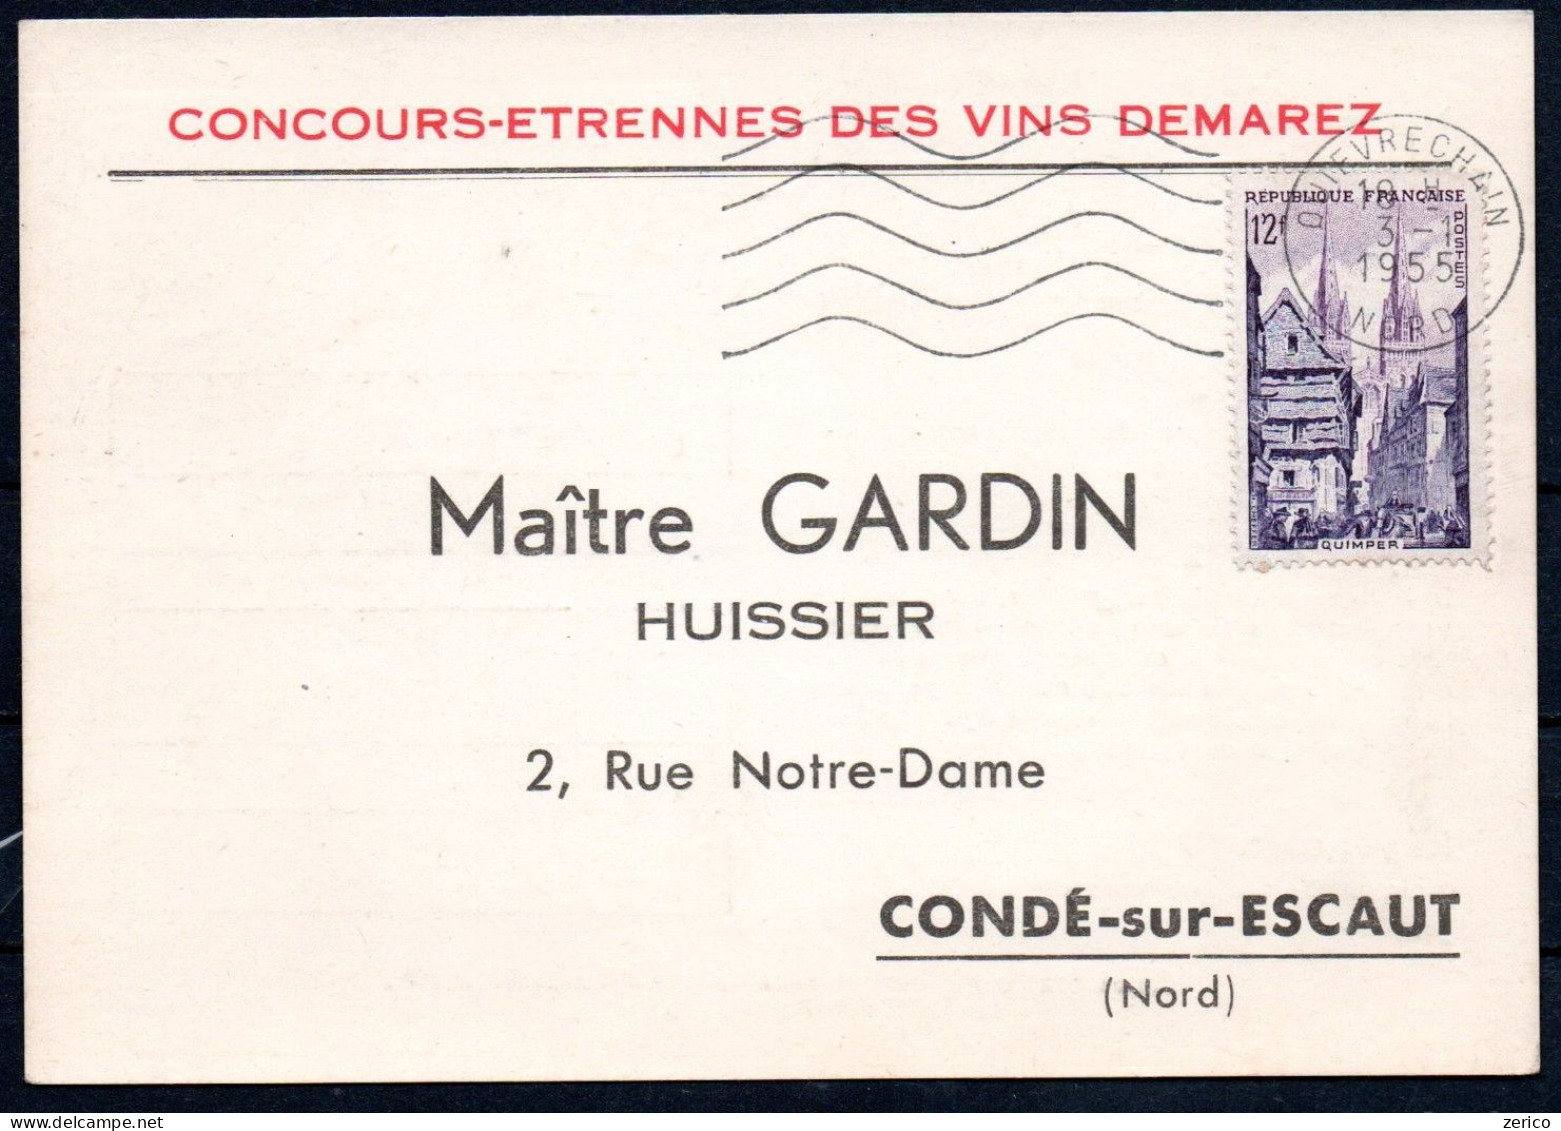 CONDE Sur Escaut Carte Concours-étrennes Des Vins Demarez Pour Maître Gardin, Huissier 1955 - Conde Sur Escaut